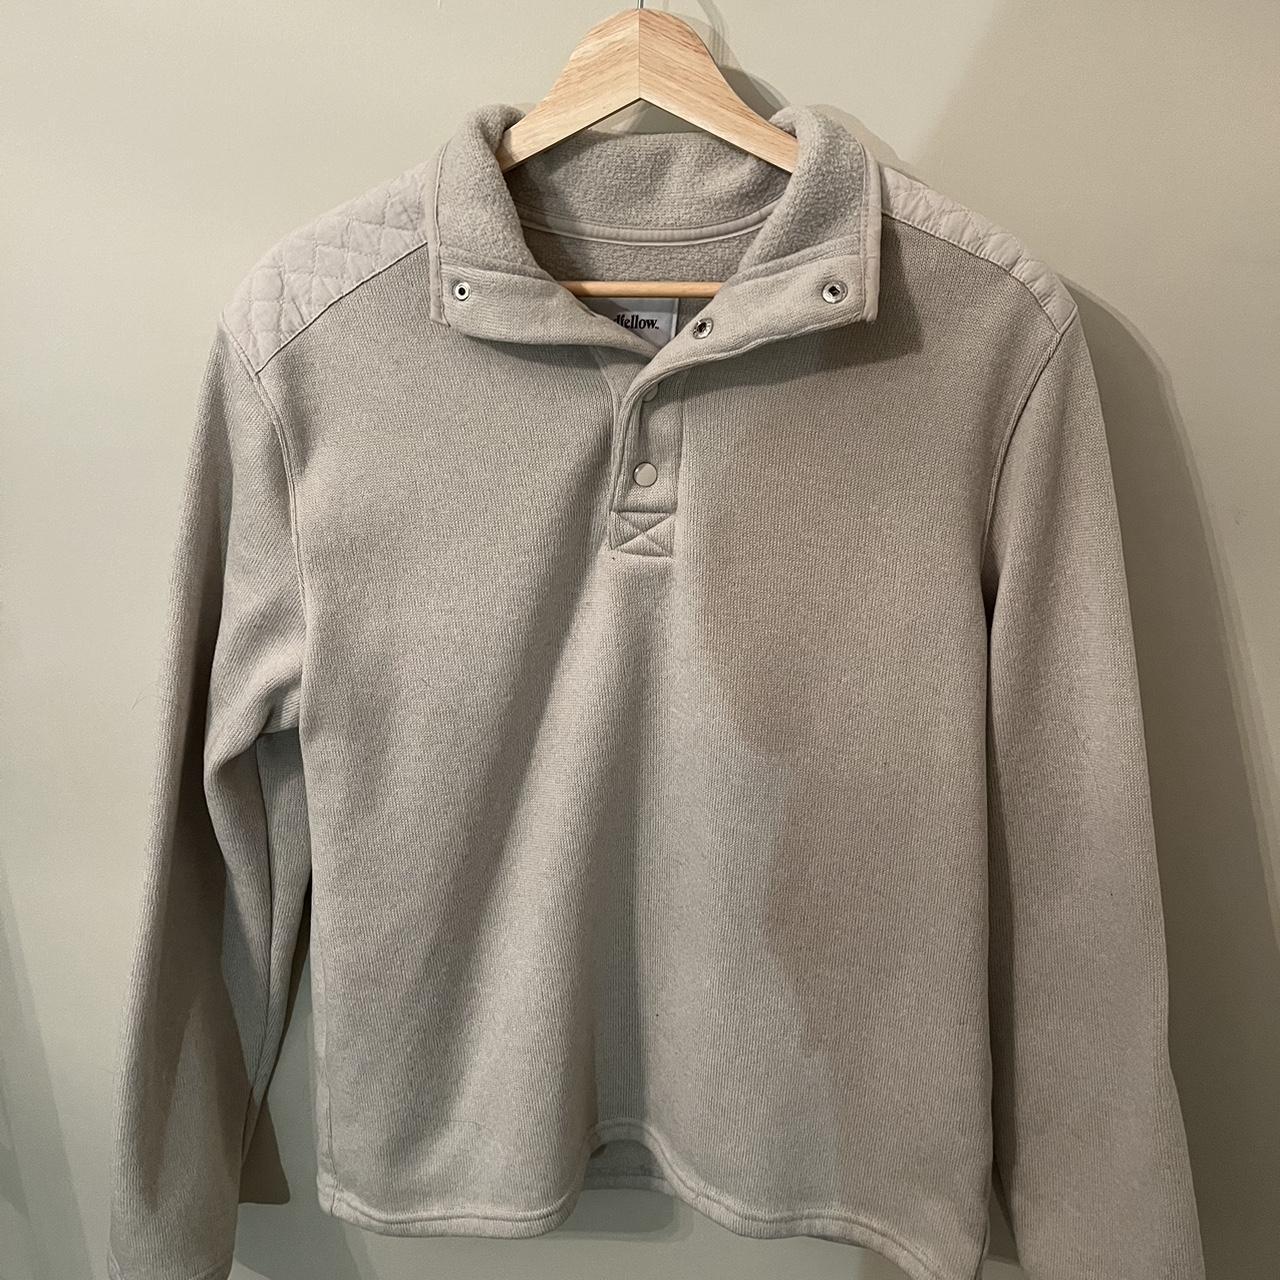 Goodfellow & Co Sweater - half button-up - men’s size M - Depop